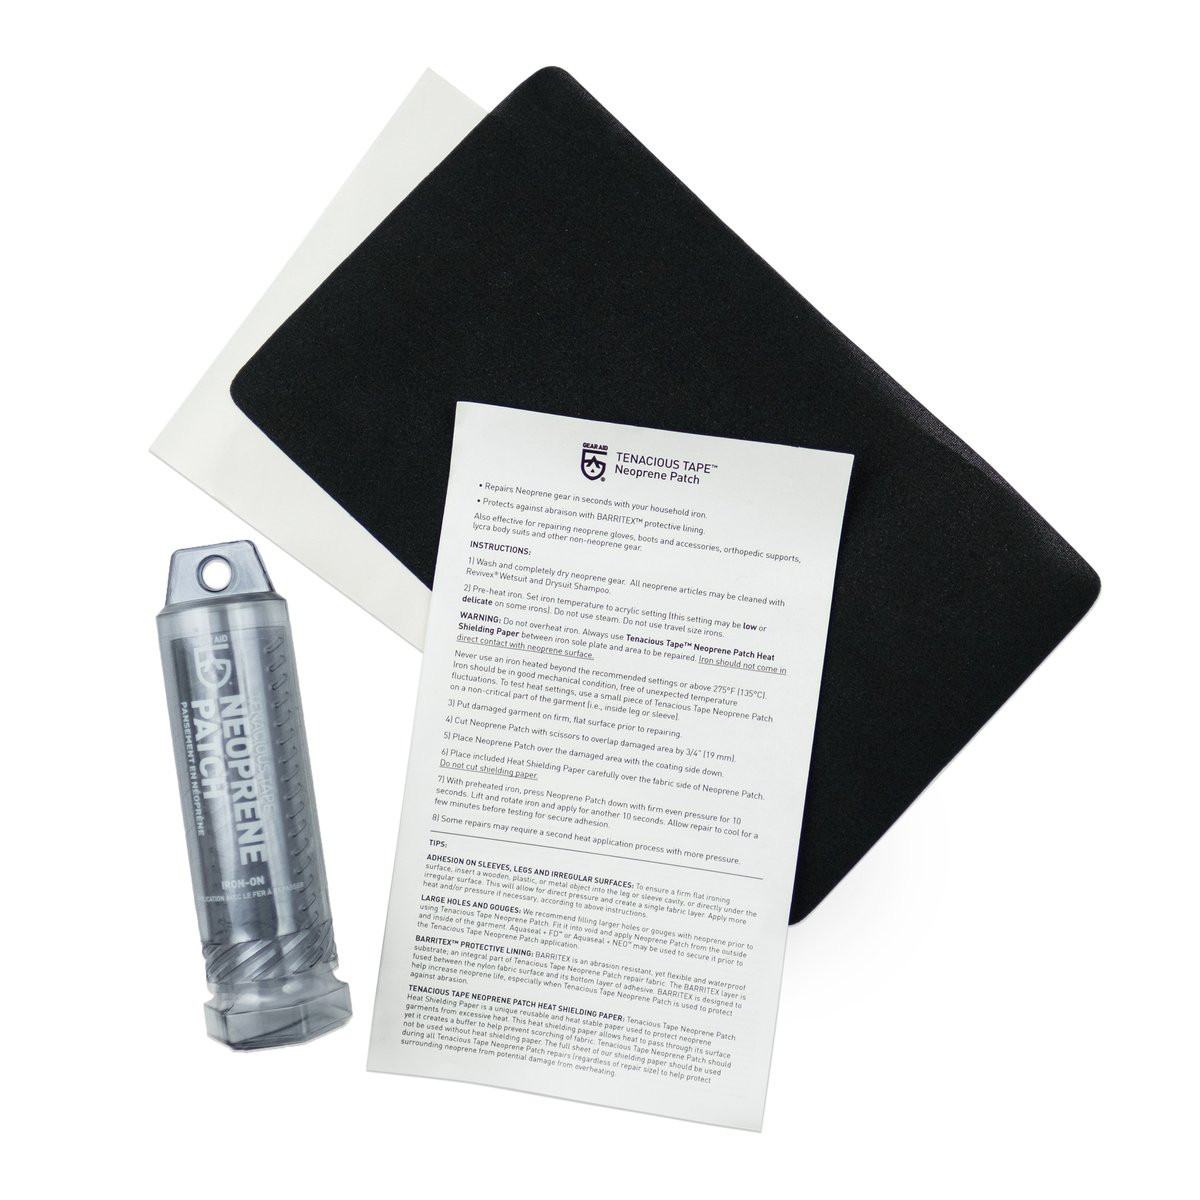 Waterproof Tear Repair Kit- Aquaseal Flexible Durable Repair Adhesive